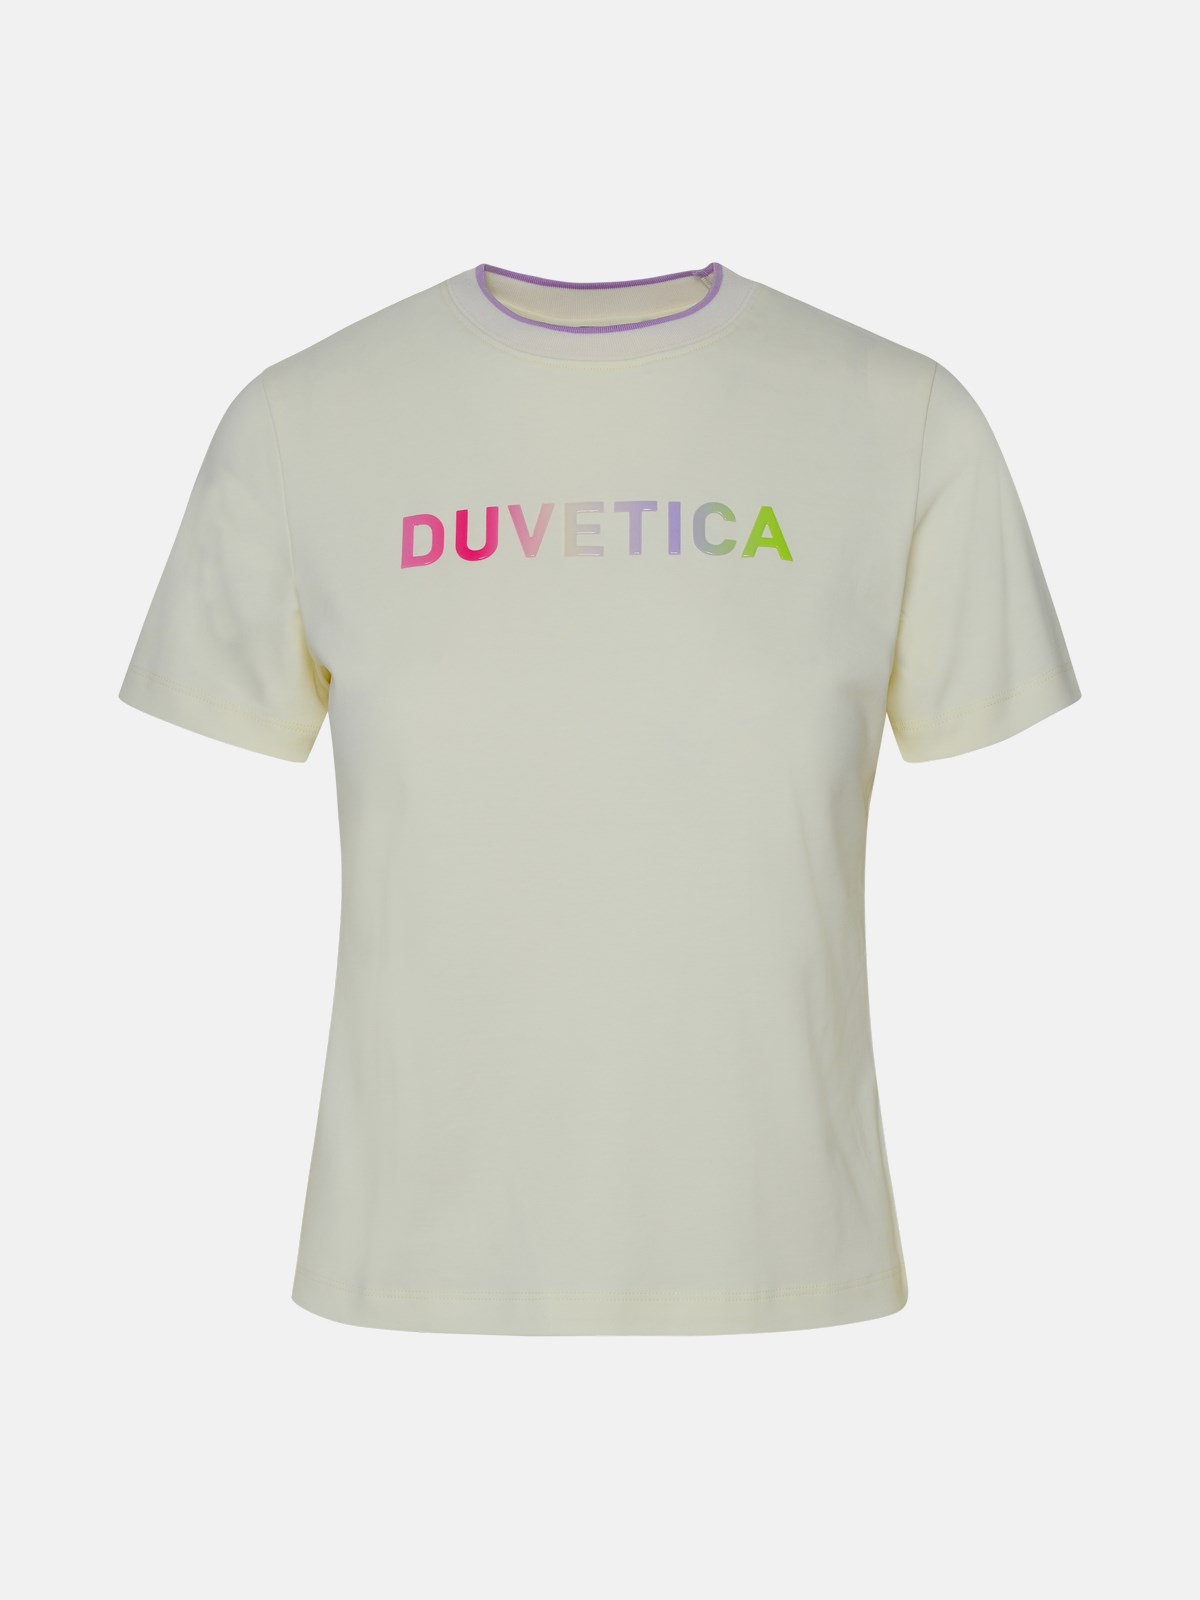 Duvetica Curon White Cotton T-shirt